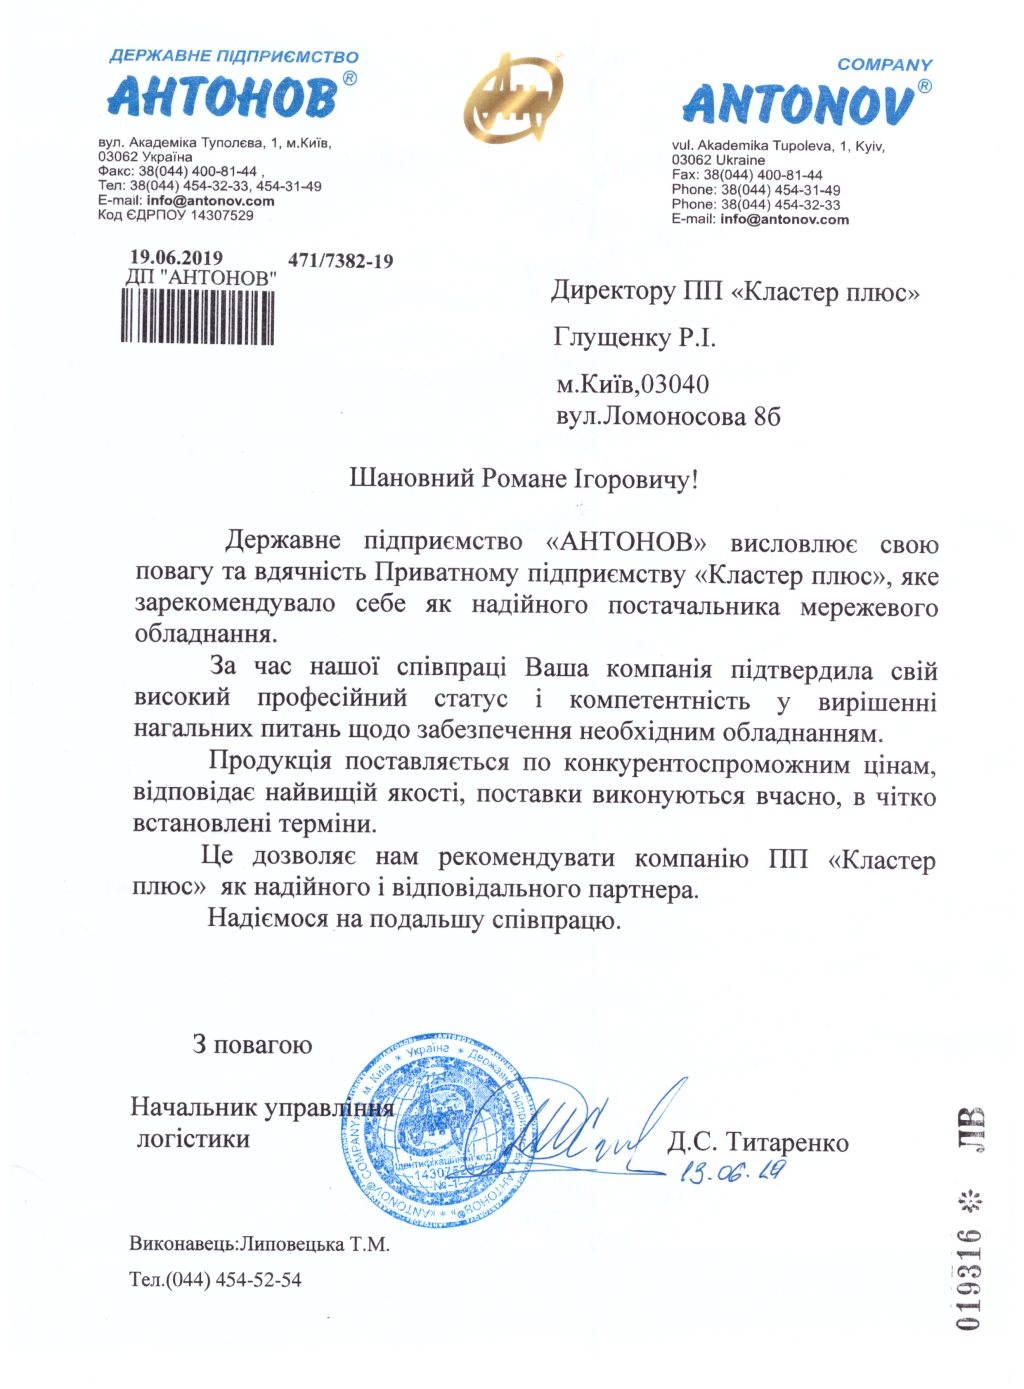 Рекомендаційний лист від ДП «АНТОНОВ»